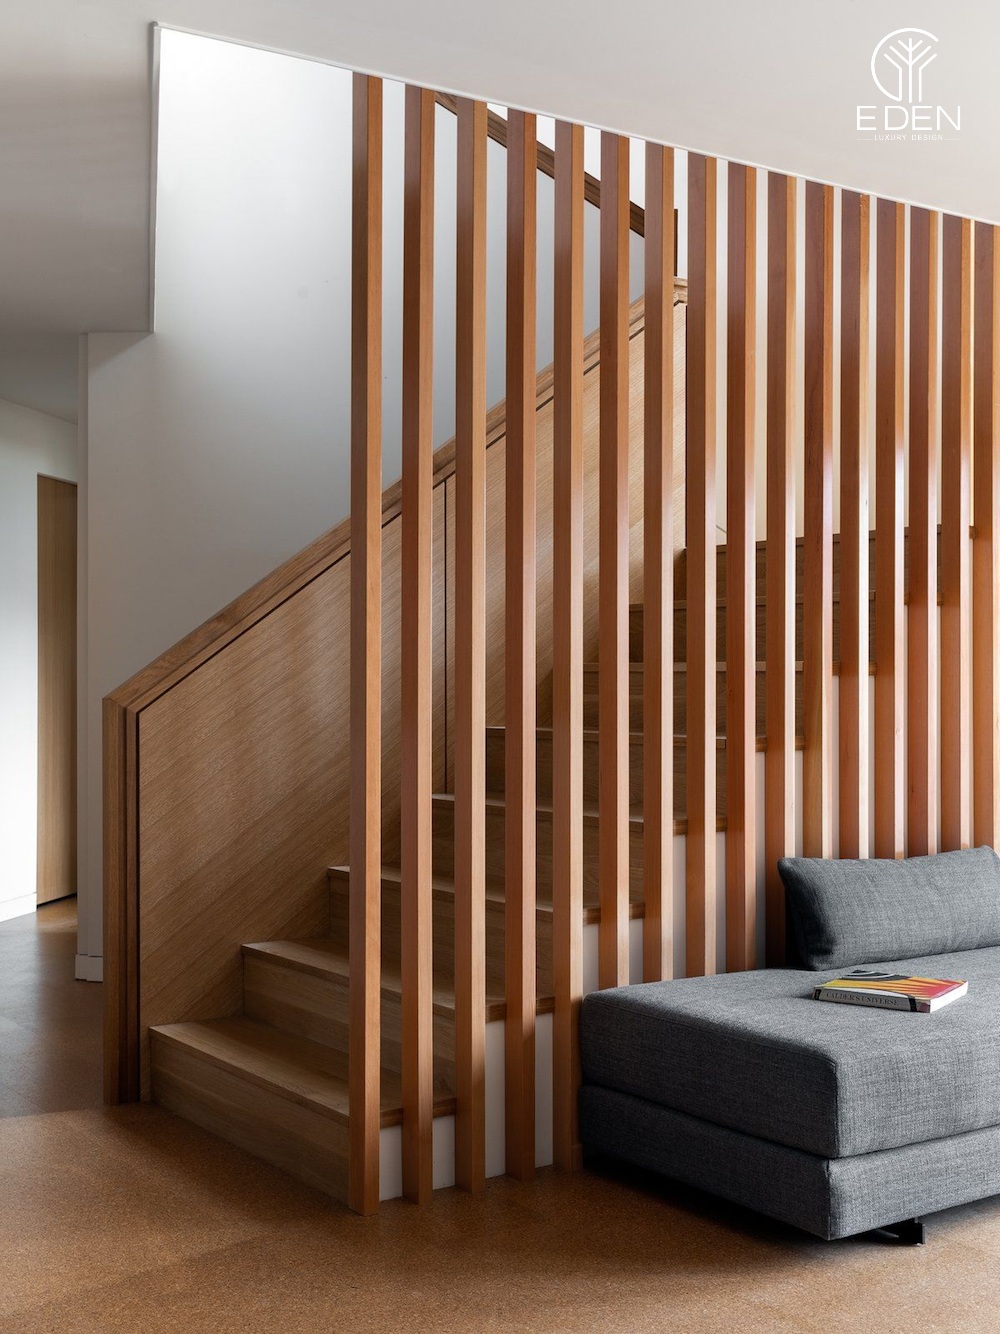 Chi phí lắp đặt lam gỗ che cầu thang tương đối rẻ so với những loại vách ngăn khác